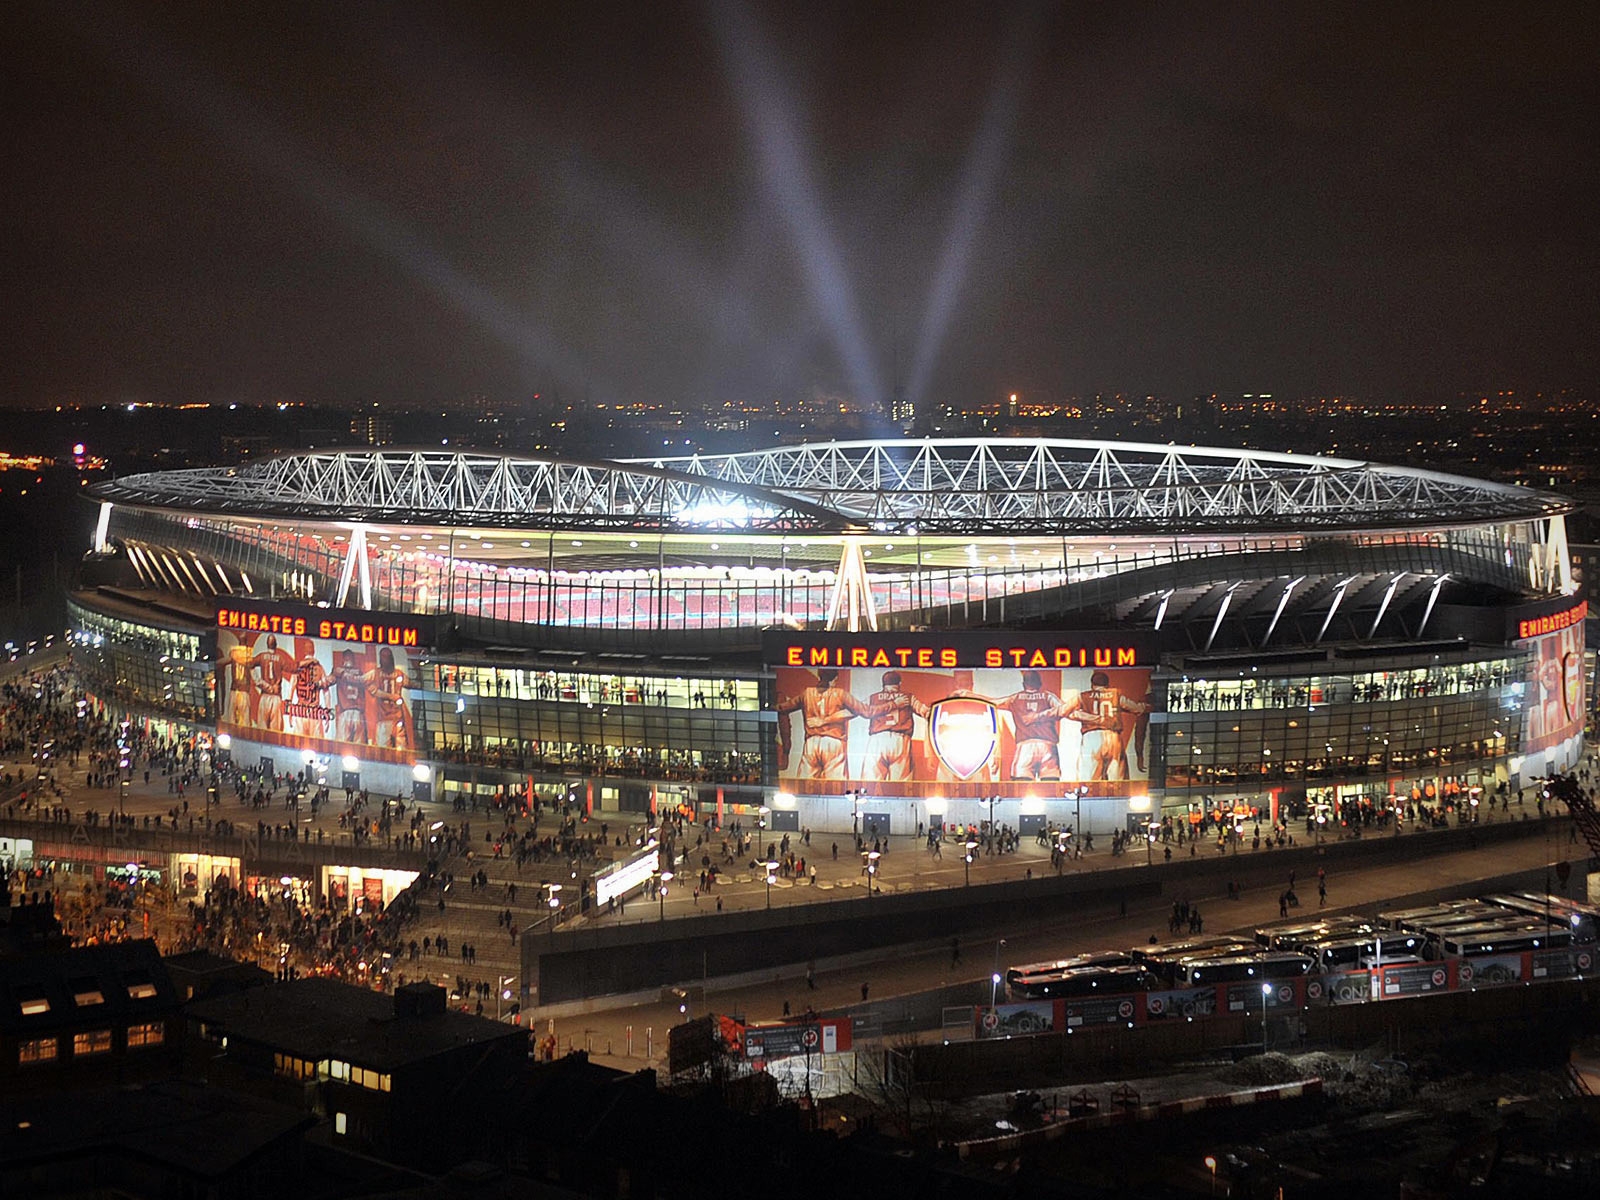 Emirates Stadium for 1600 x 1200 resolution